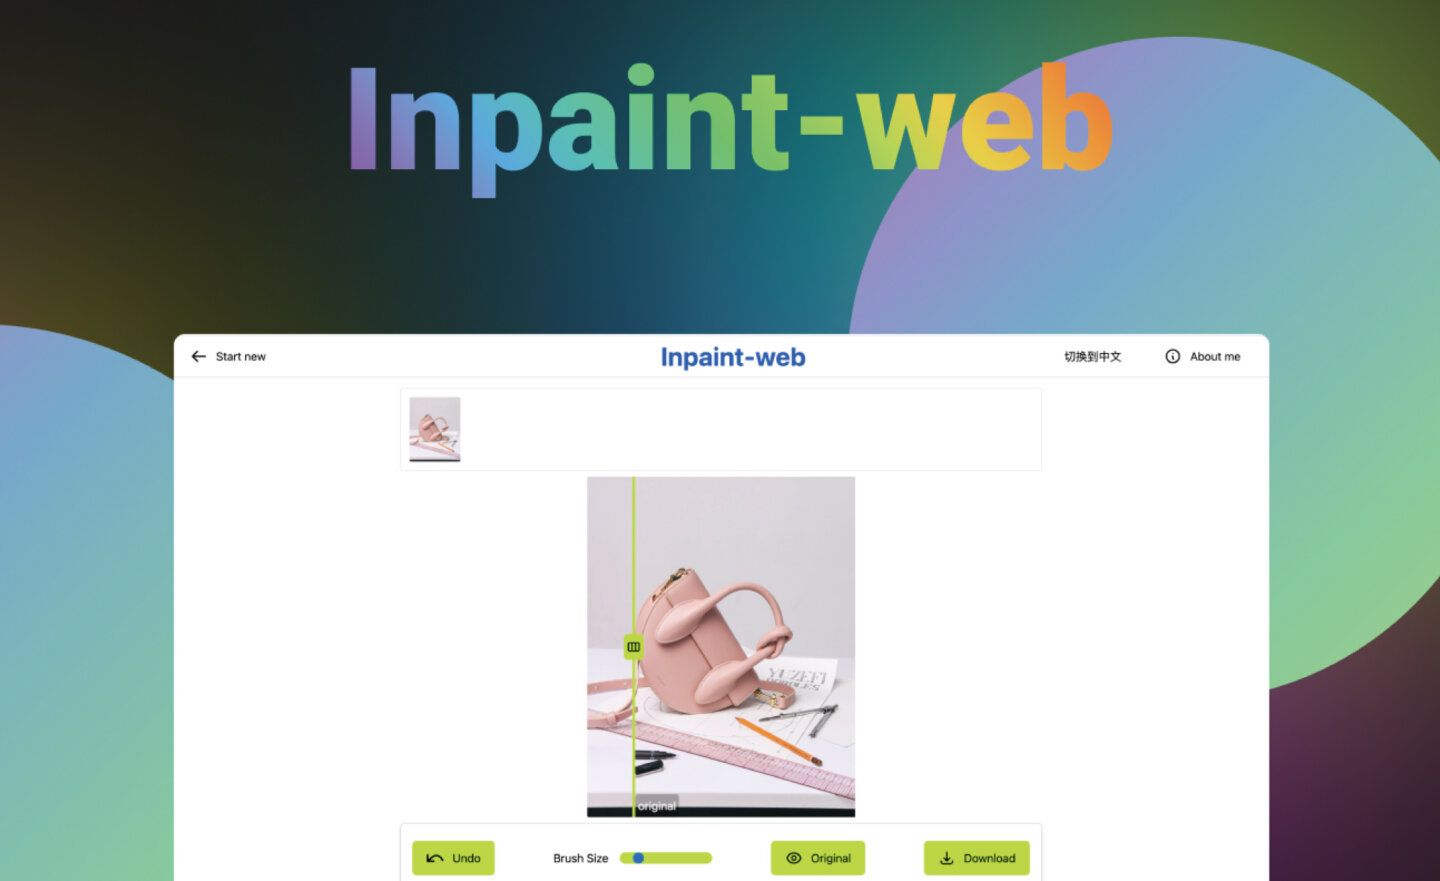 【免費】「Inpaint-web」圖像編輯工具，提供圖片修復、無損放大功能